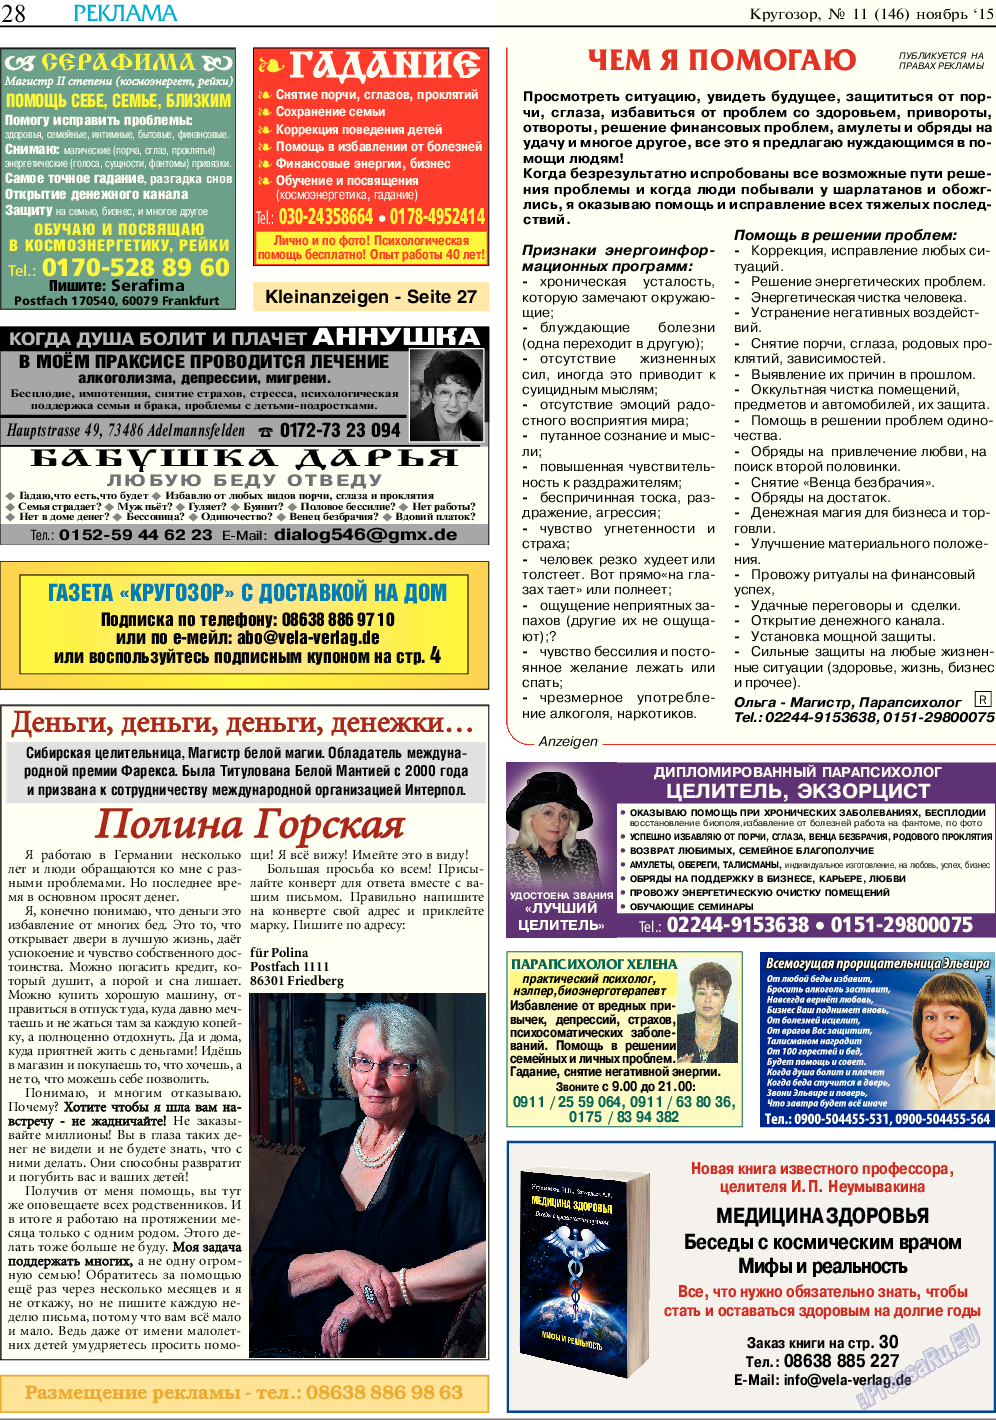 Кругозор, газета. 2015 №11 стр.28